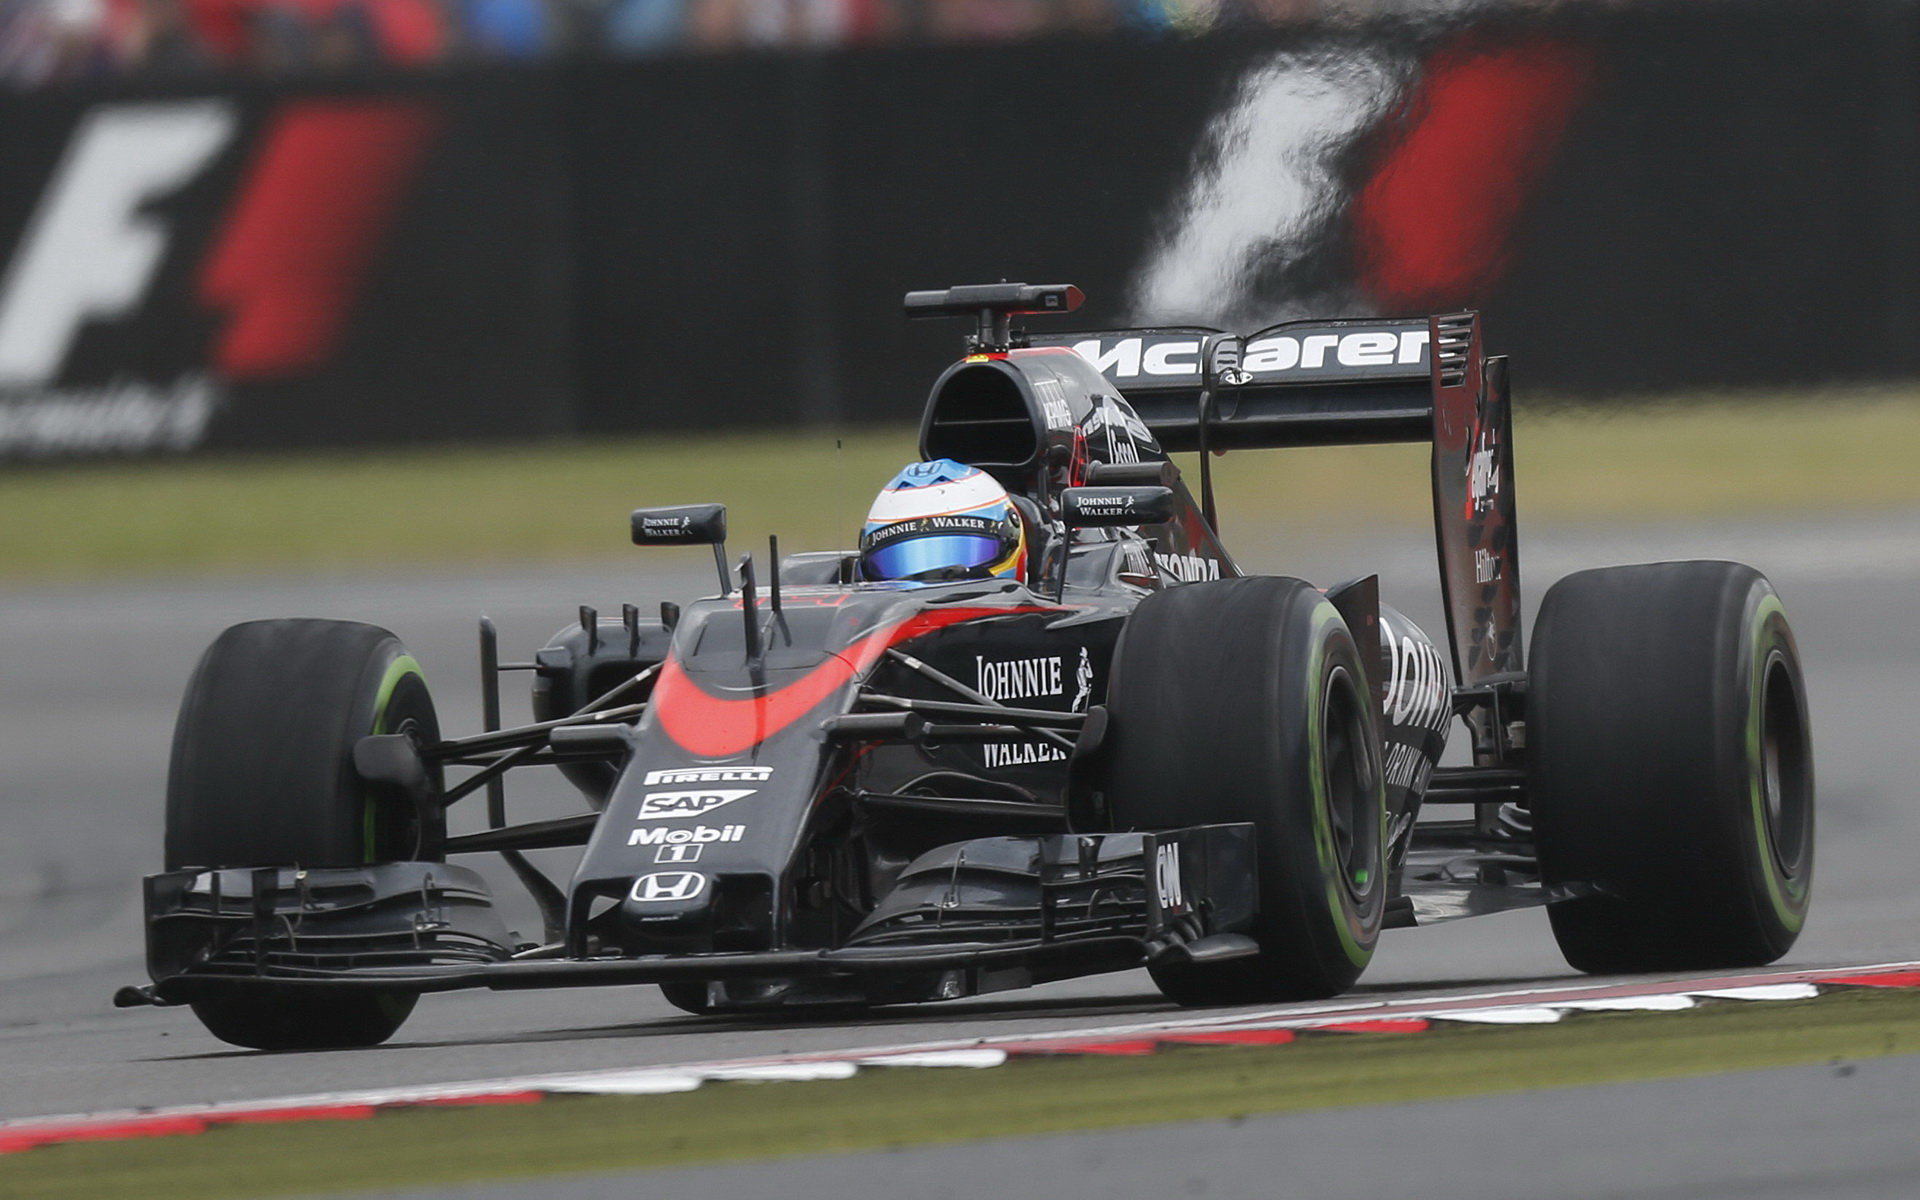 Alonso v Belgii na F1 nikdy nevyhrál a ani letos to nečeká, na okruh ve Spa se ale těší.